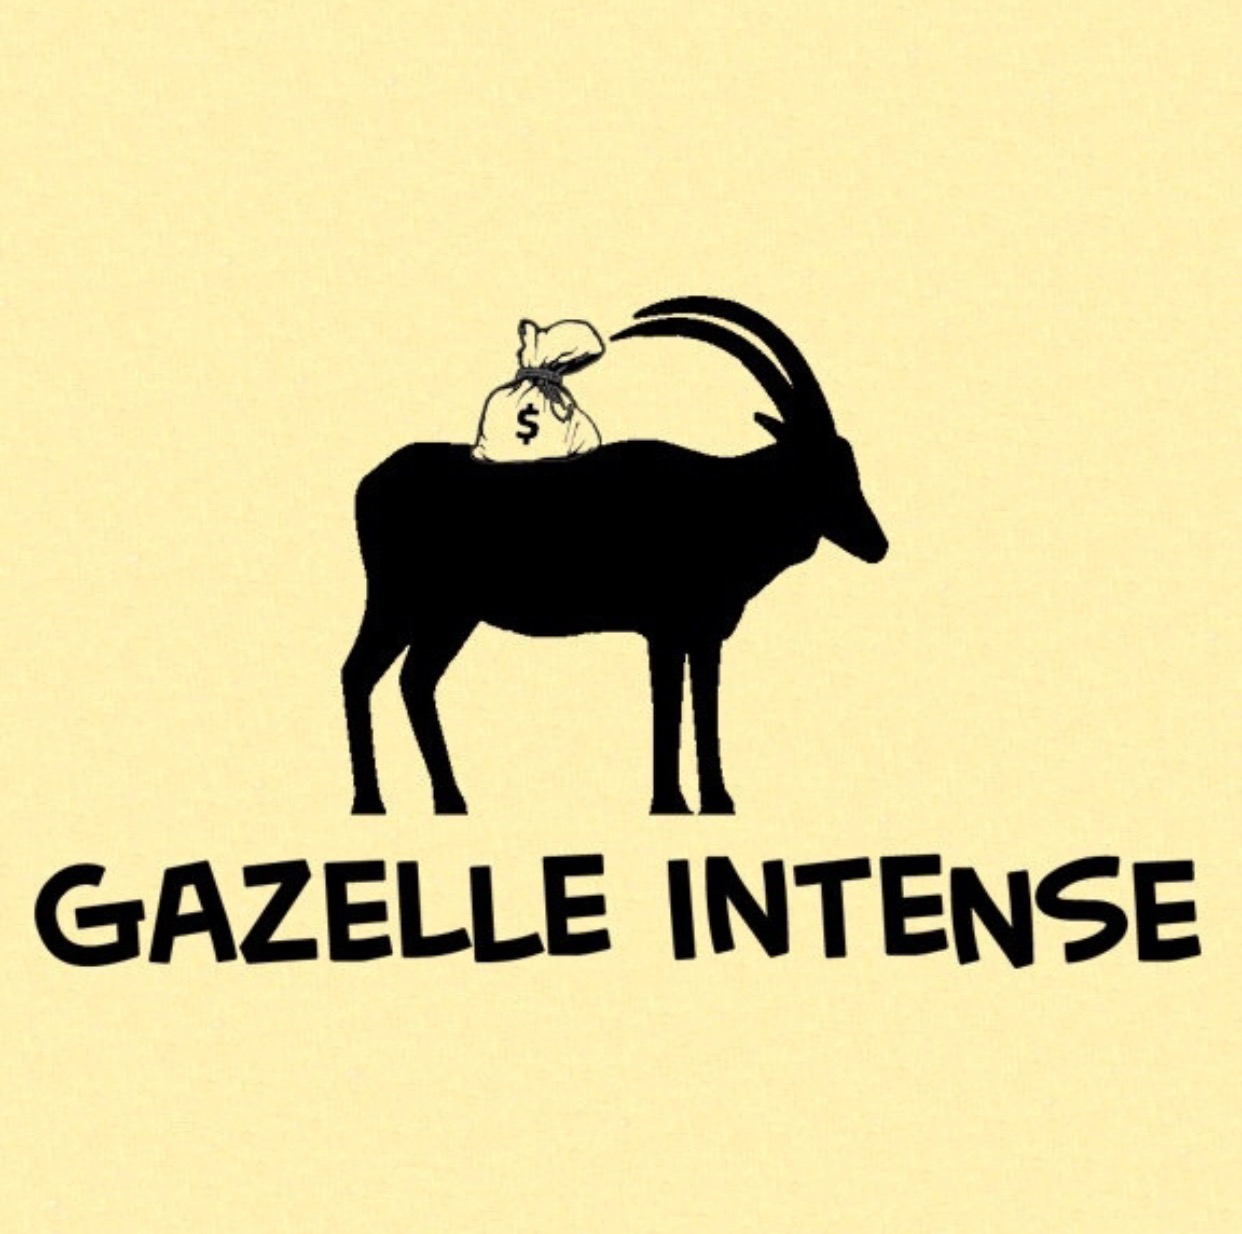 Gazelle intense